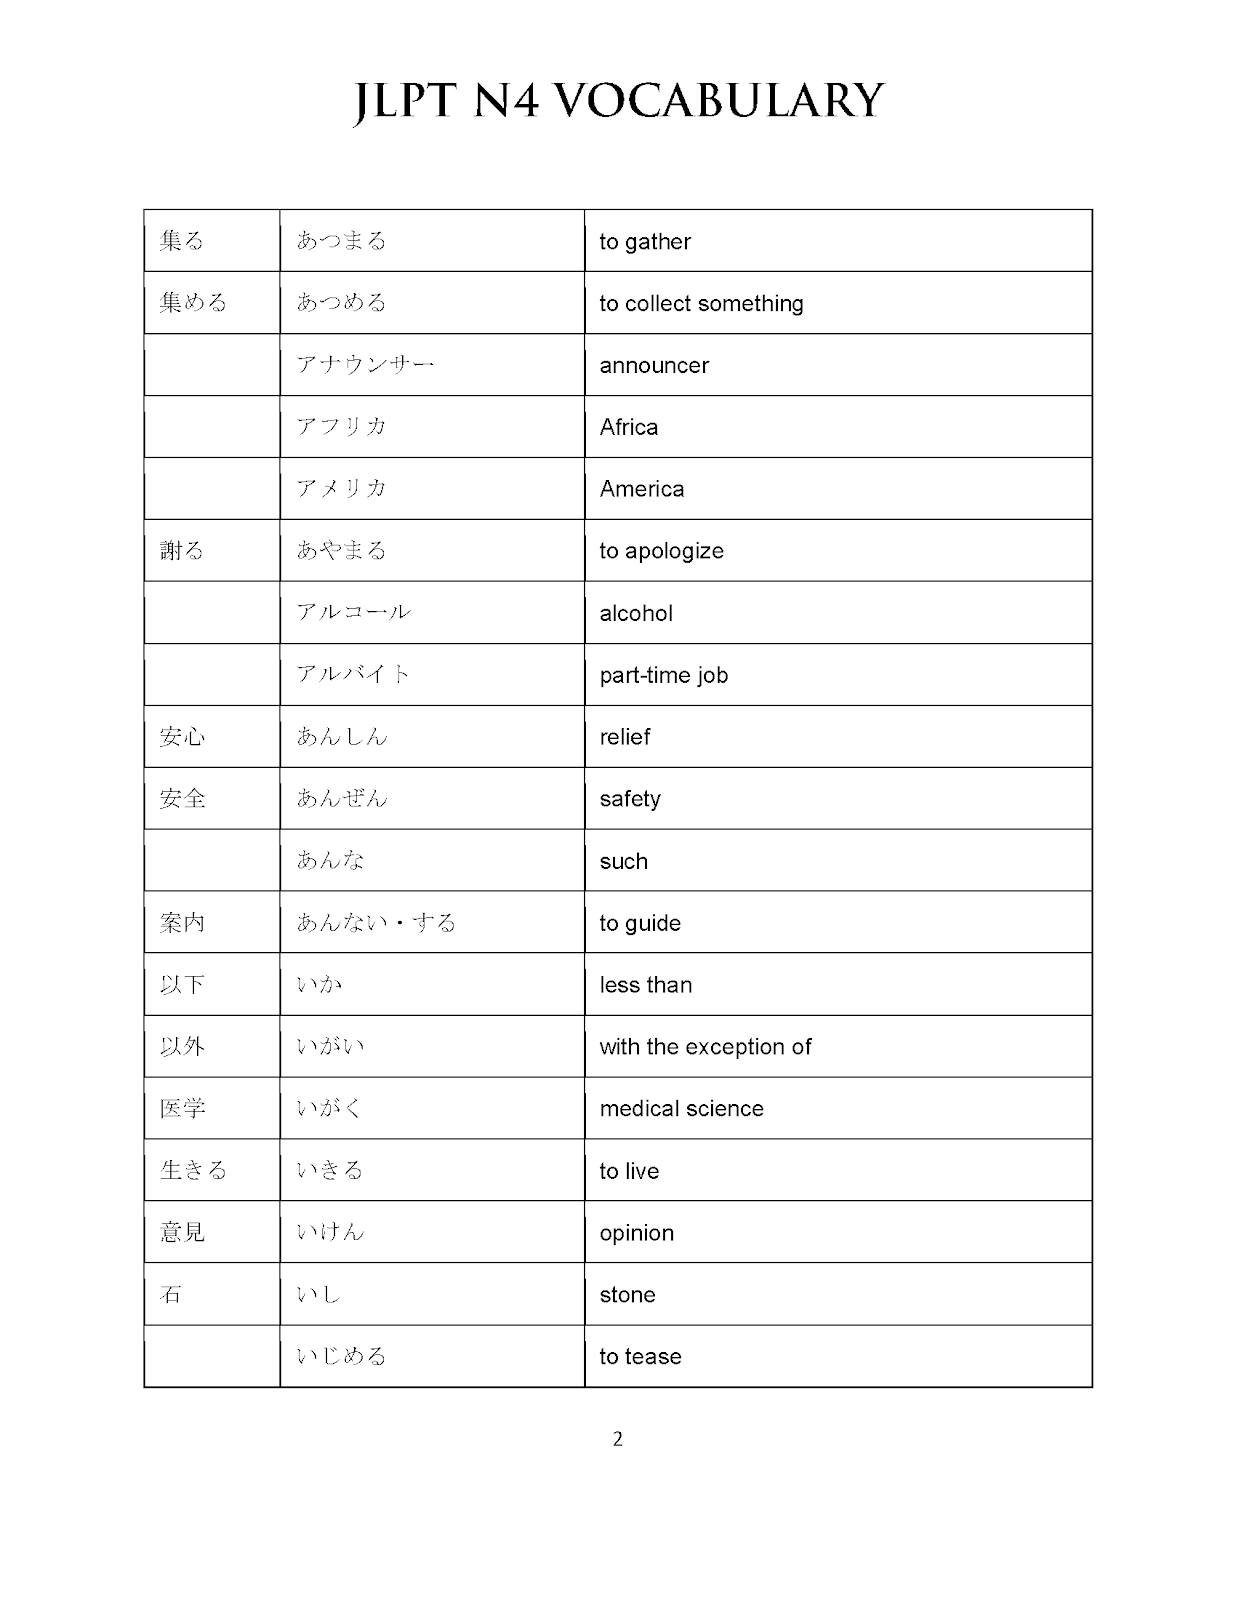 Jlpt n4 vocabulary list pdf